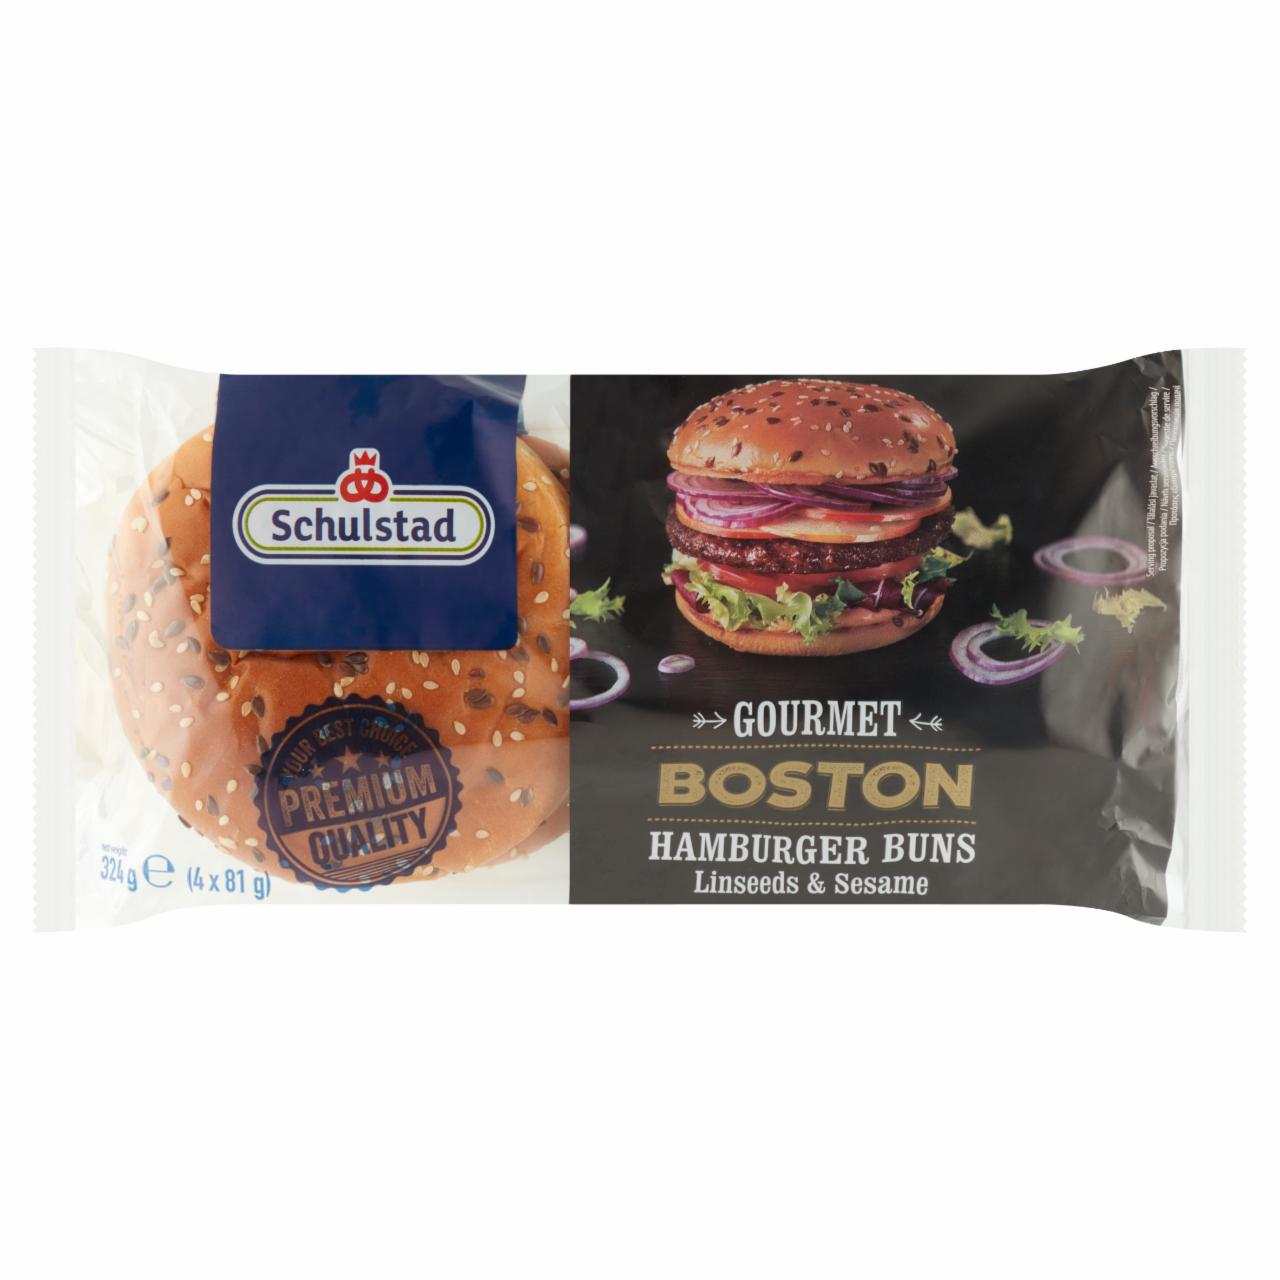 Képek - Schulstad Gourmet Boston lenmaggal és szezámmaggal szórt hamburger zsemle 4 x 81 g (324 g)